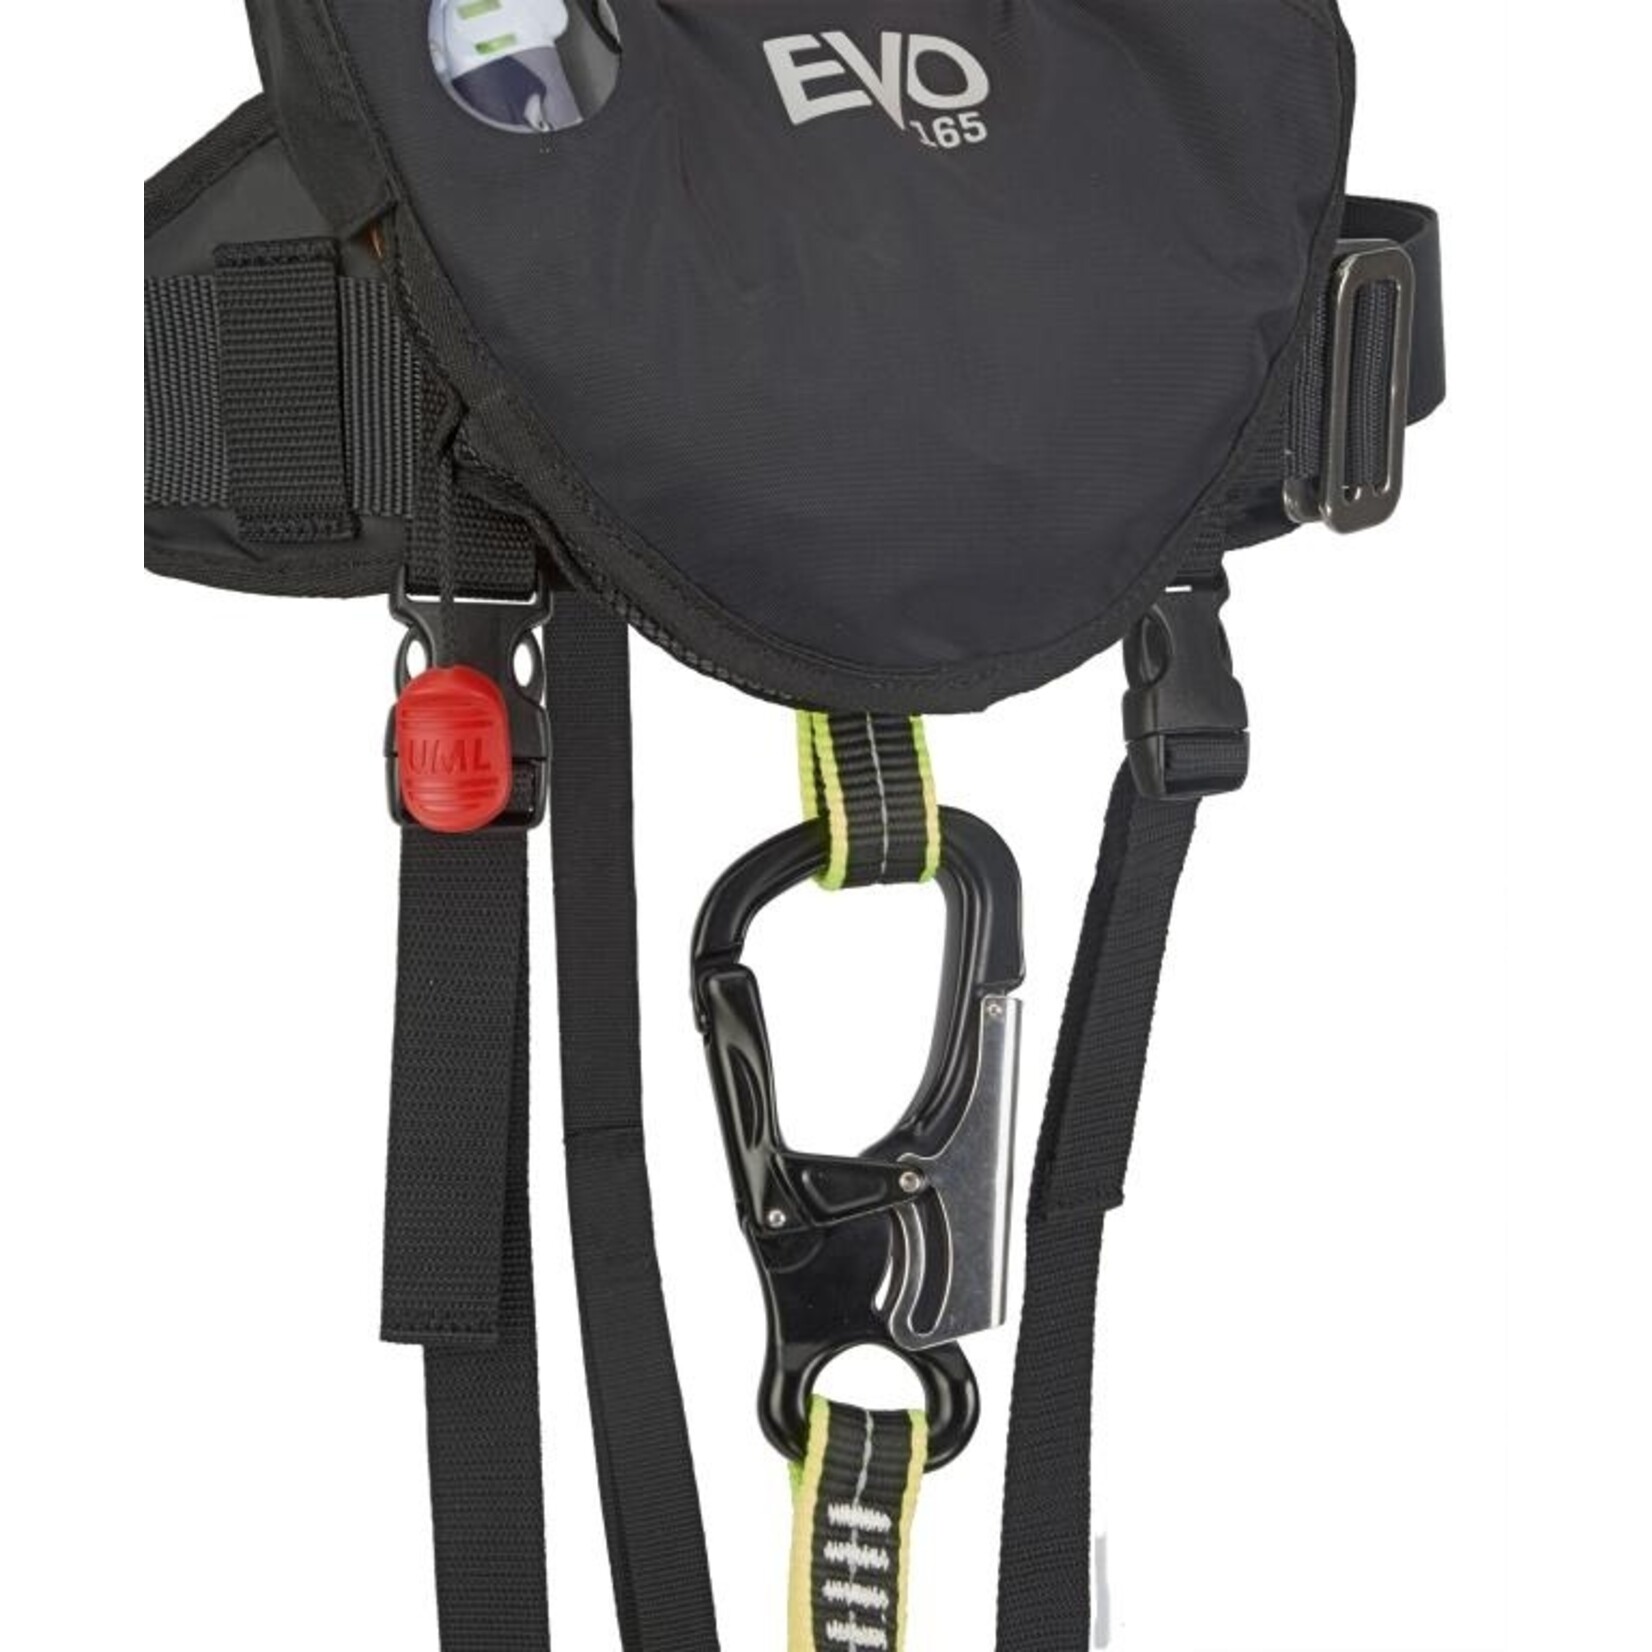 Plastimo Evo 165 ii hammar black with harness.